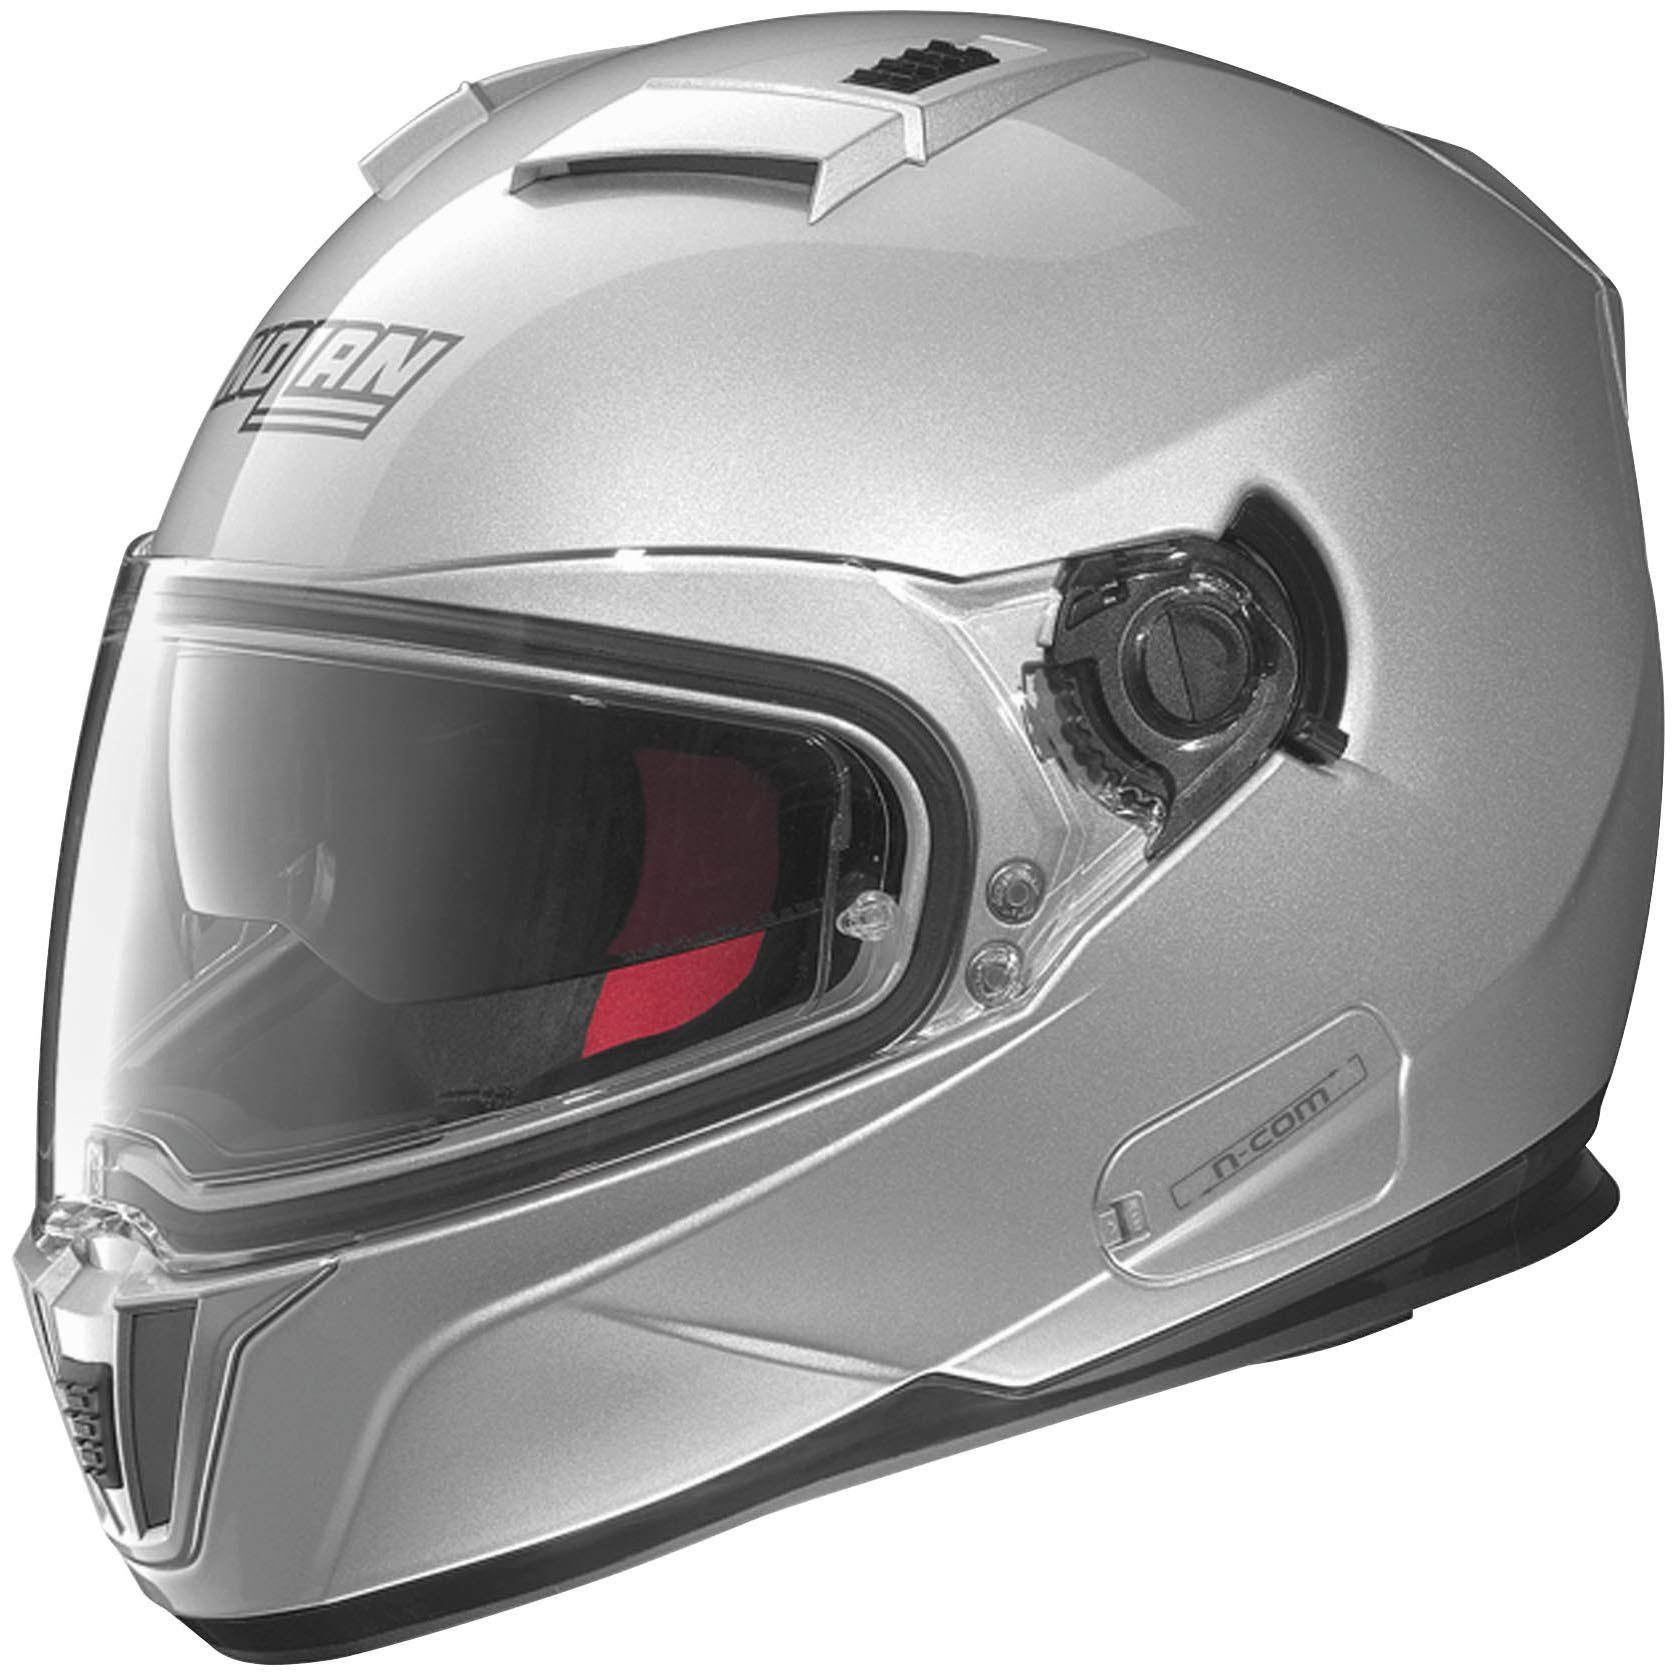 Nolan N86 Motorcycle Helmet